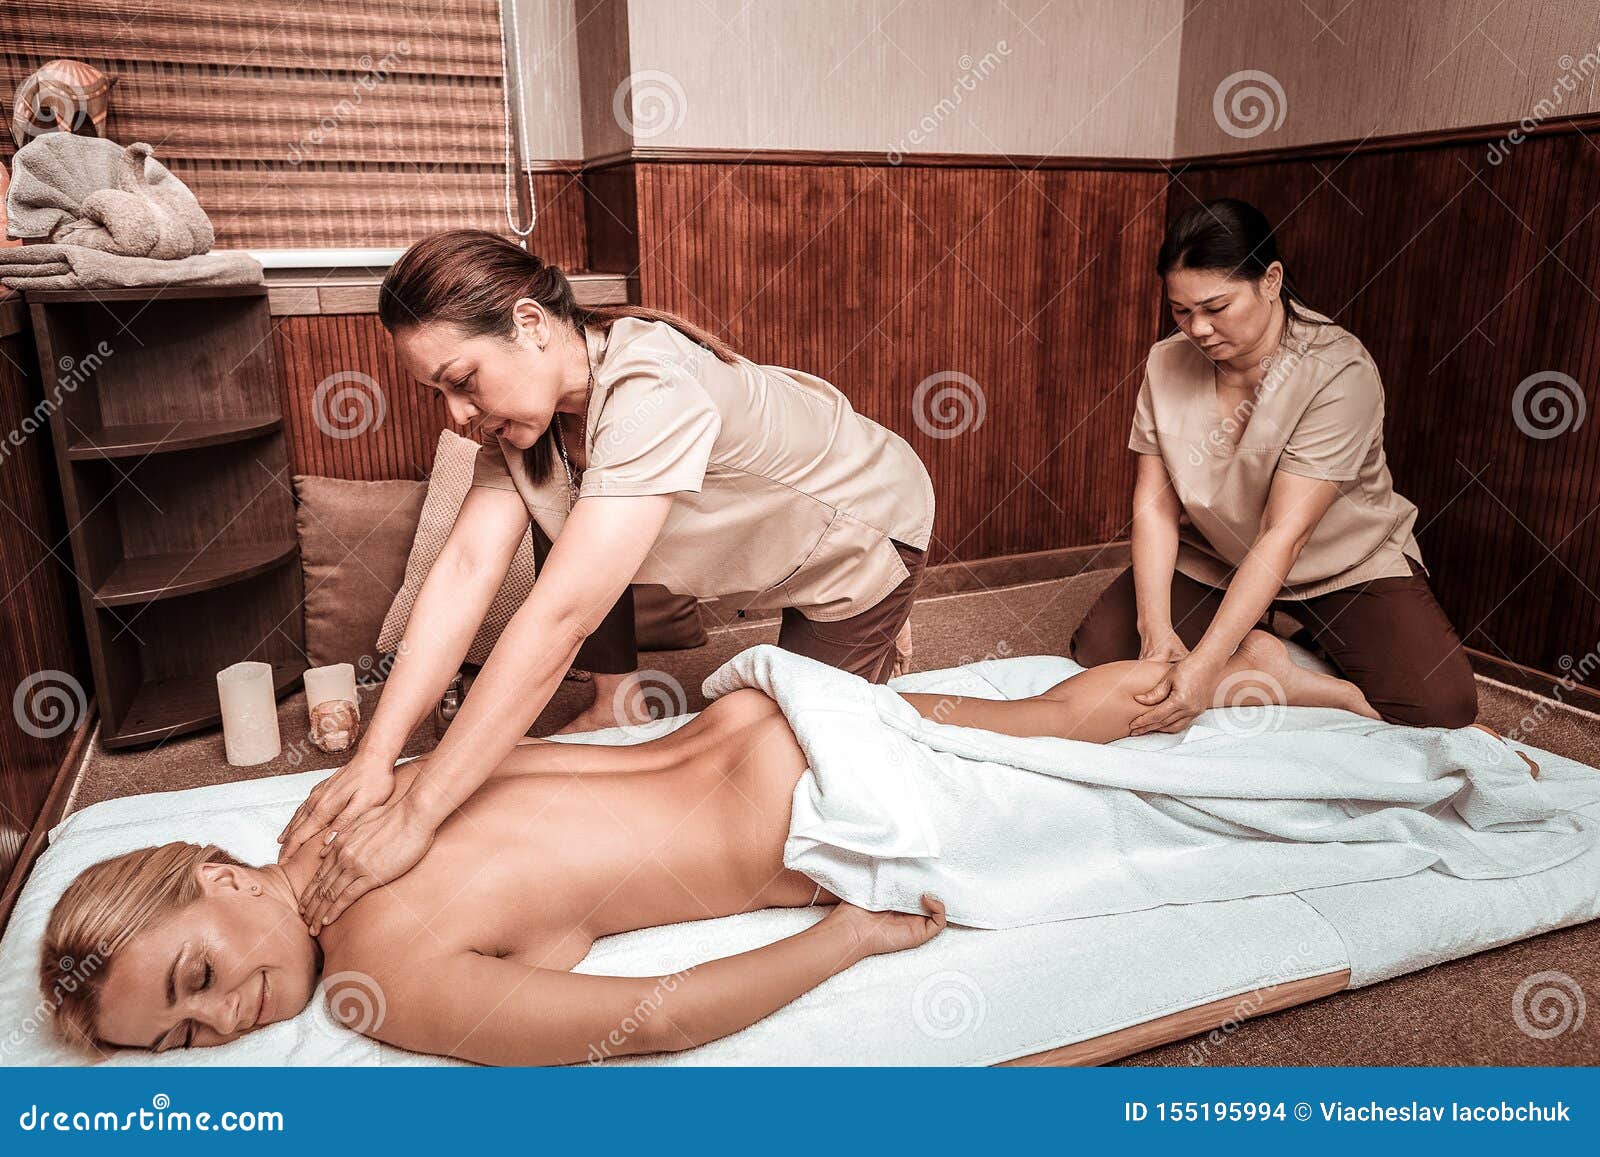 Two girls massage